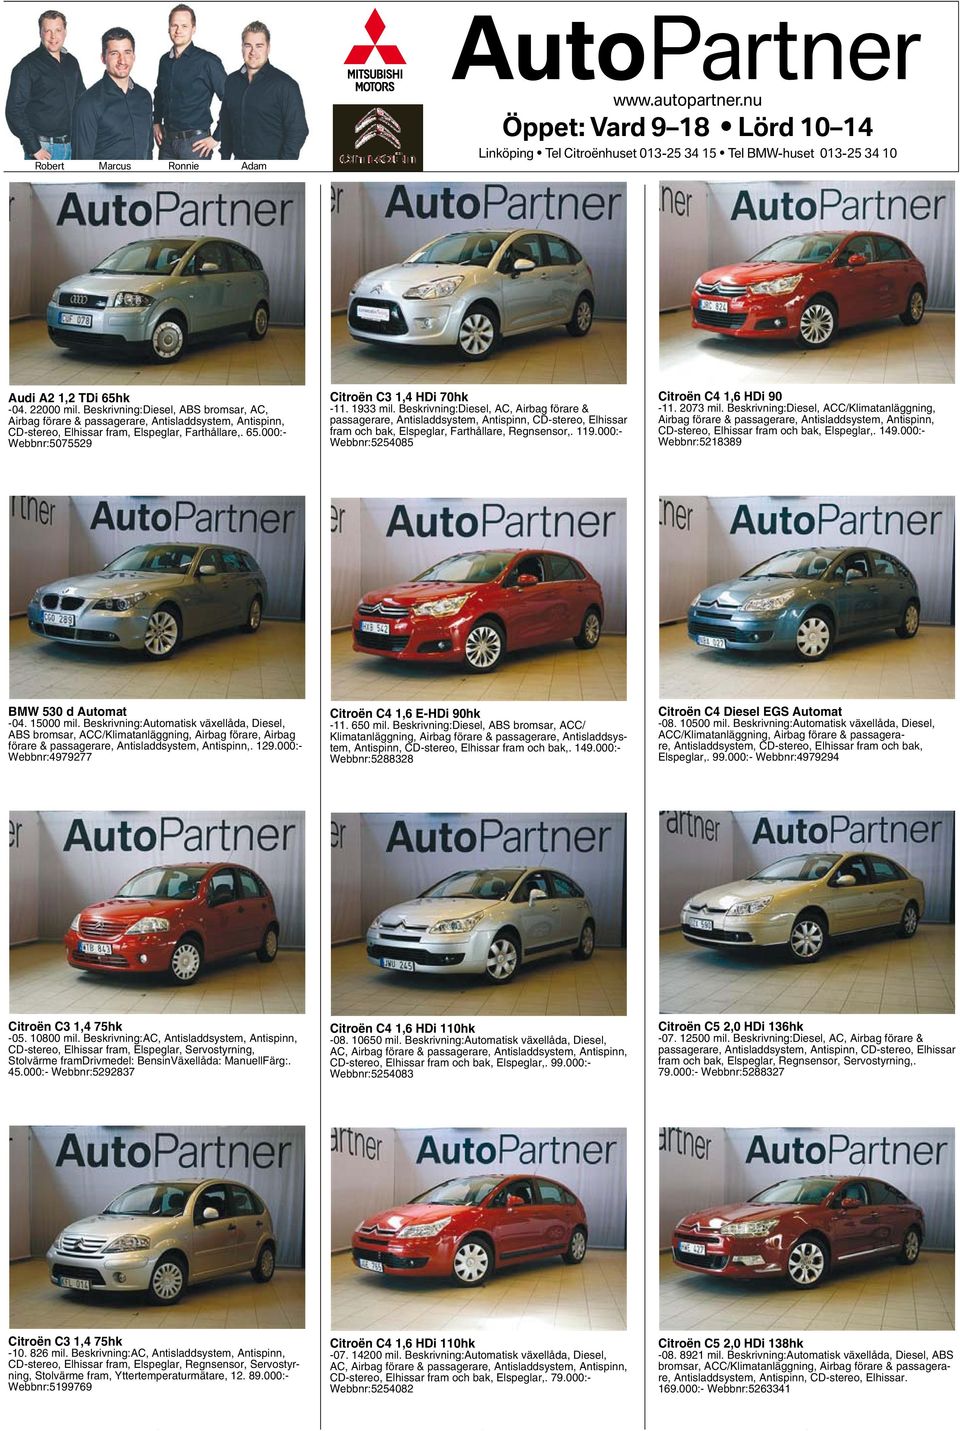 Beskrivning:Diesel, ABS bromsar, AC, Airbag förare & passagerare, Antisladdsystem, Antispinn, CD-stereo, Elhissar fram, Elspeglar, Farthållare,. 65.000:- Webbnr:5075529 Citroën C3 1,4 HDi 70hk -11.